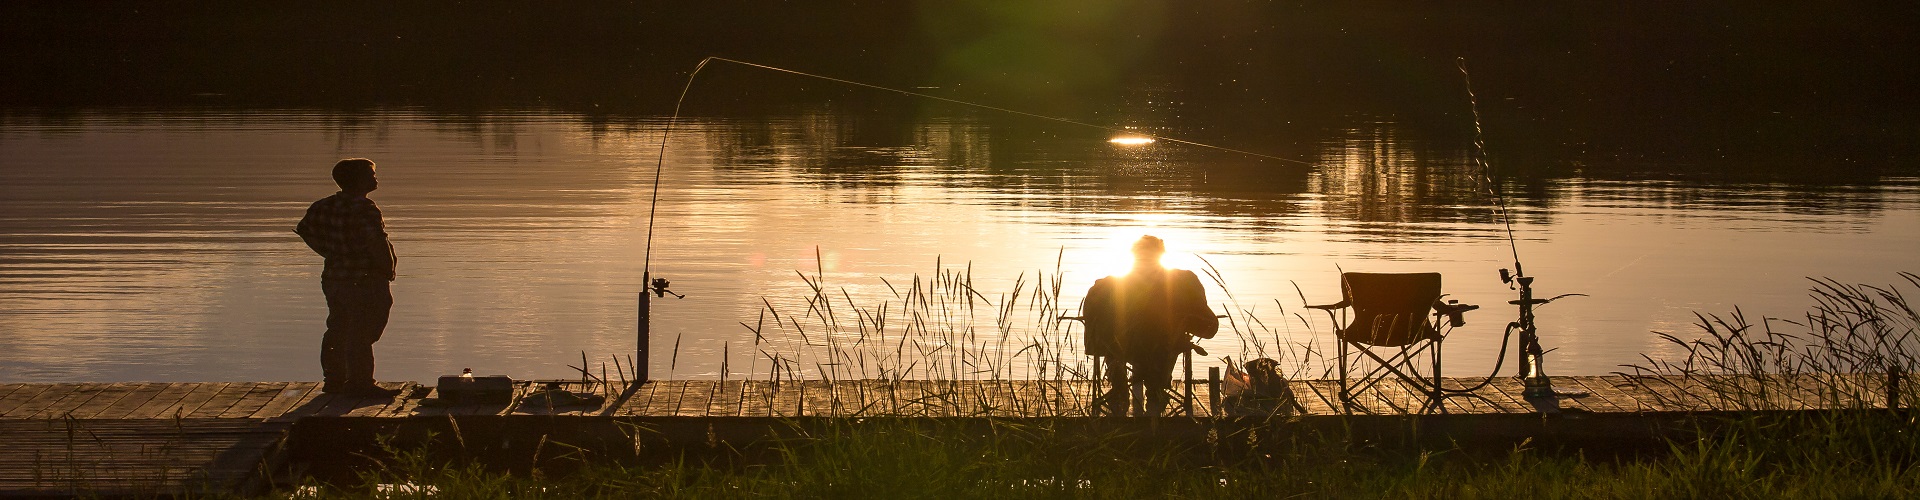 Fishing at Dinsdale Park, Brandon, Manitoba